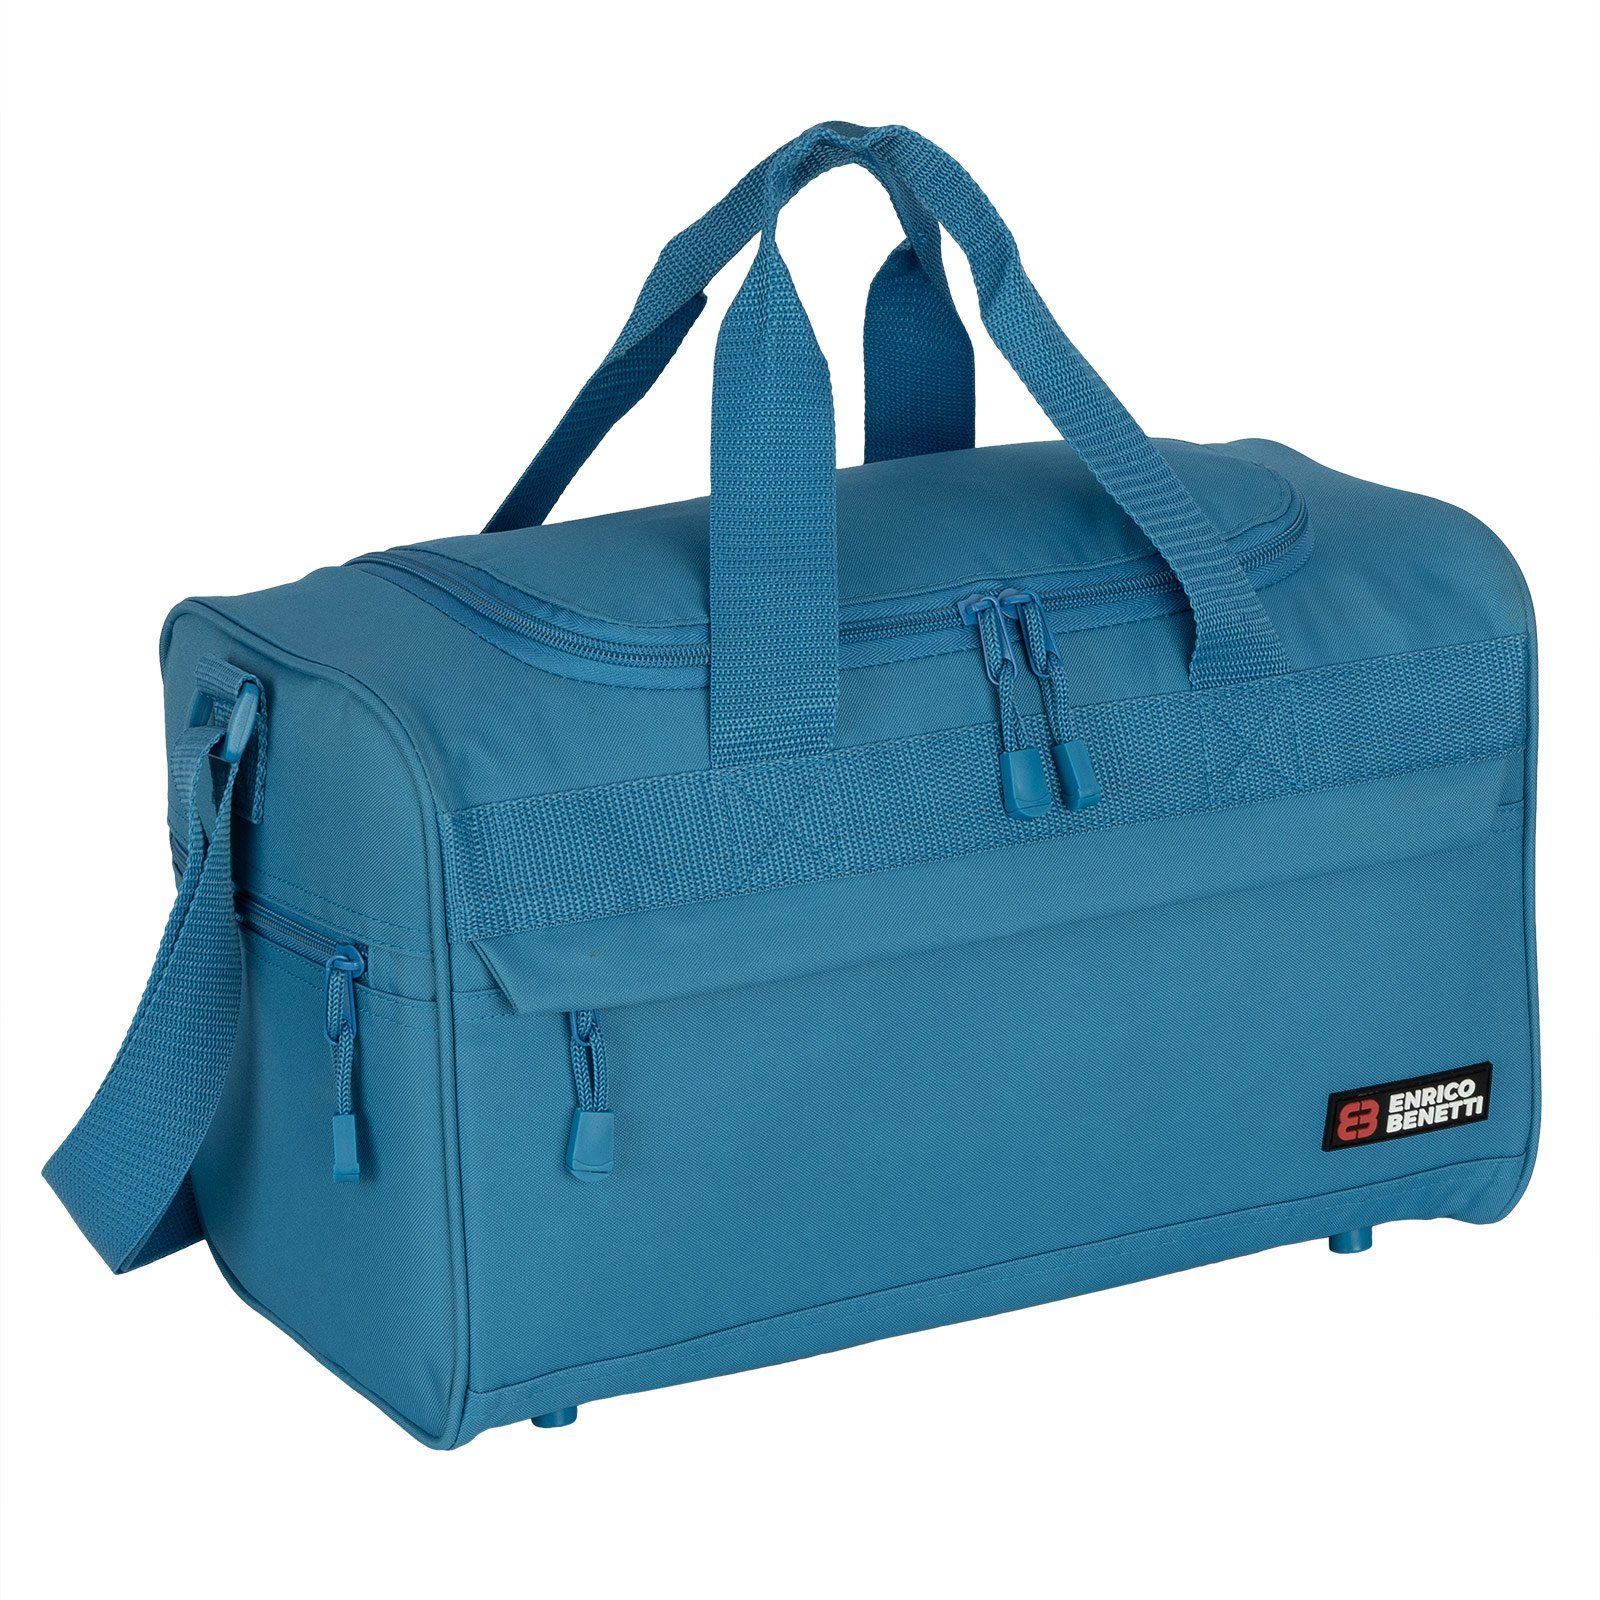 40 Fitnesstasche Reisetasche SKY-BLUE L Damen Herren EAAKIE Sporttasche Saunatasche Reisetasche